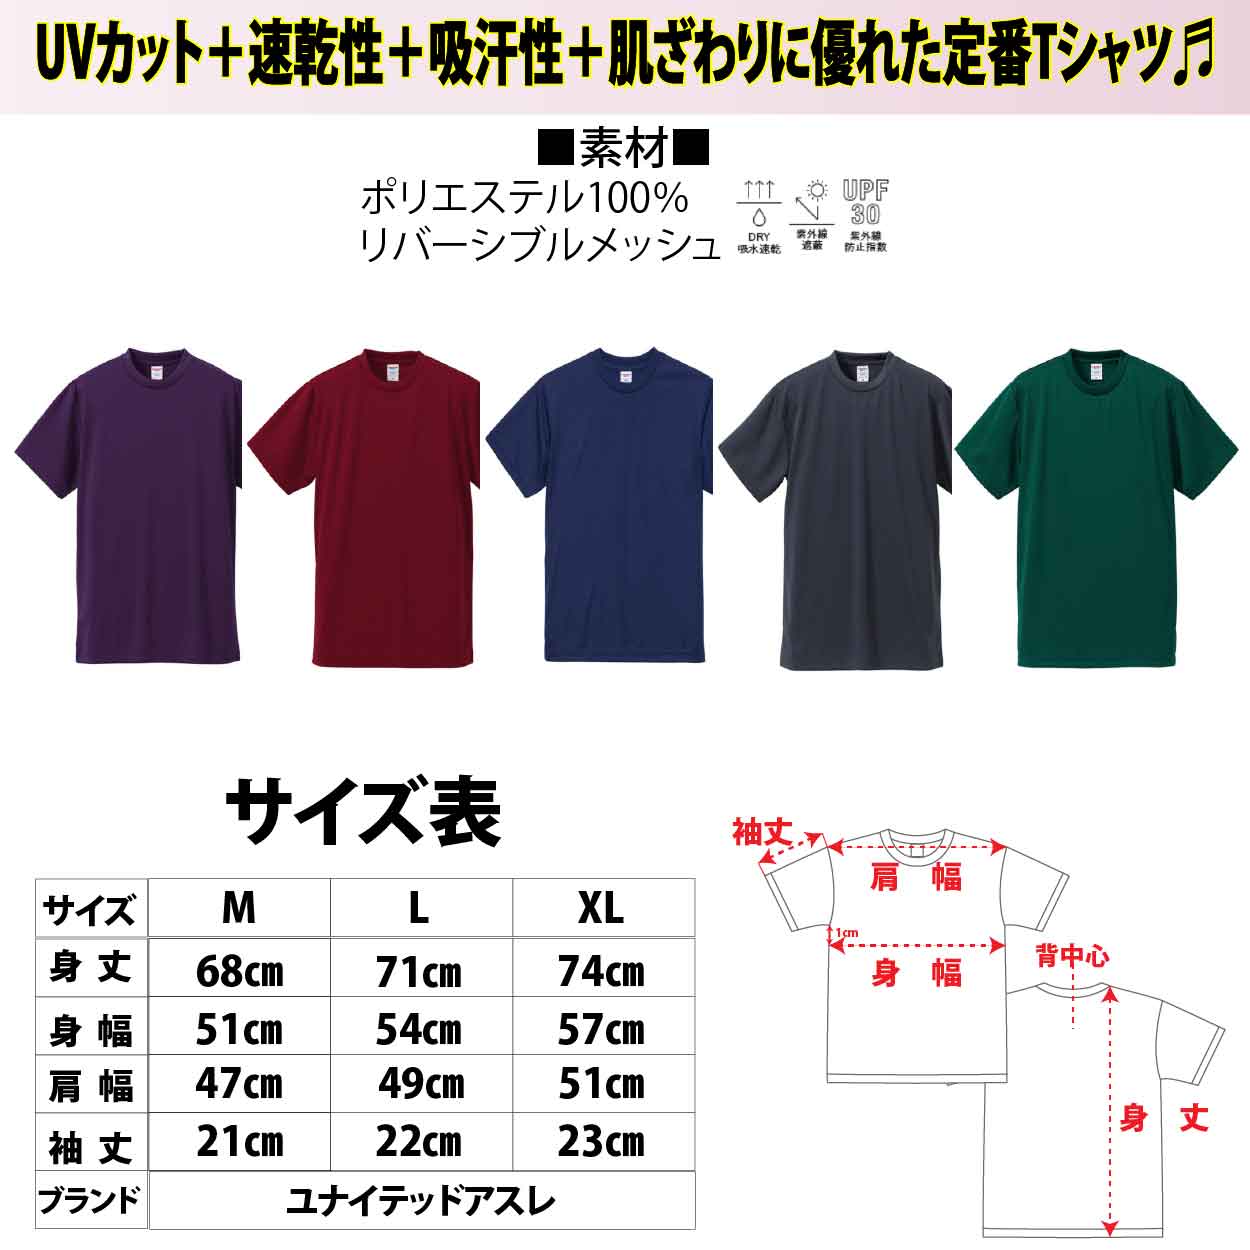 【在庫限り】５６０　JOKERオリジナル刺繍Tシャツ　M カラー:ガンメタル【限定生産】画像